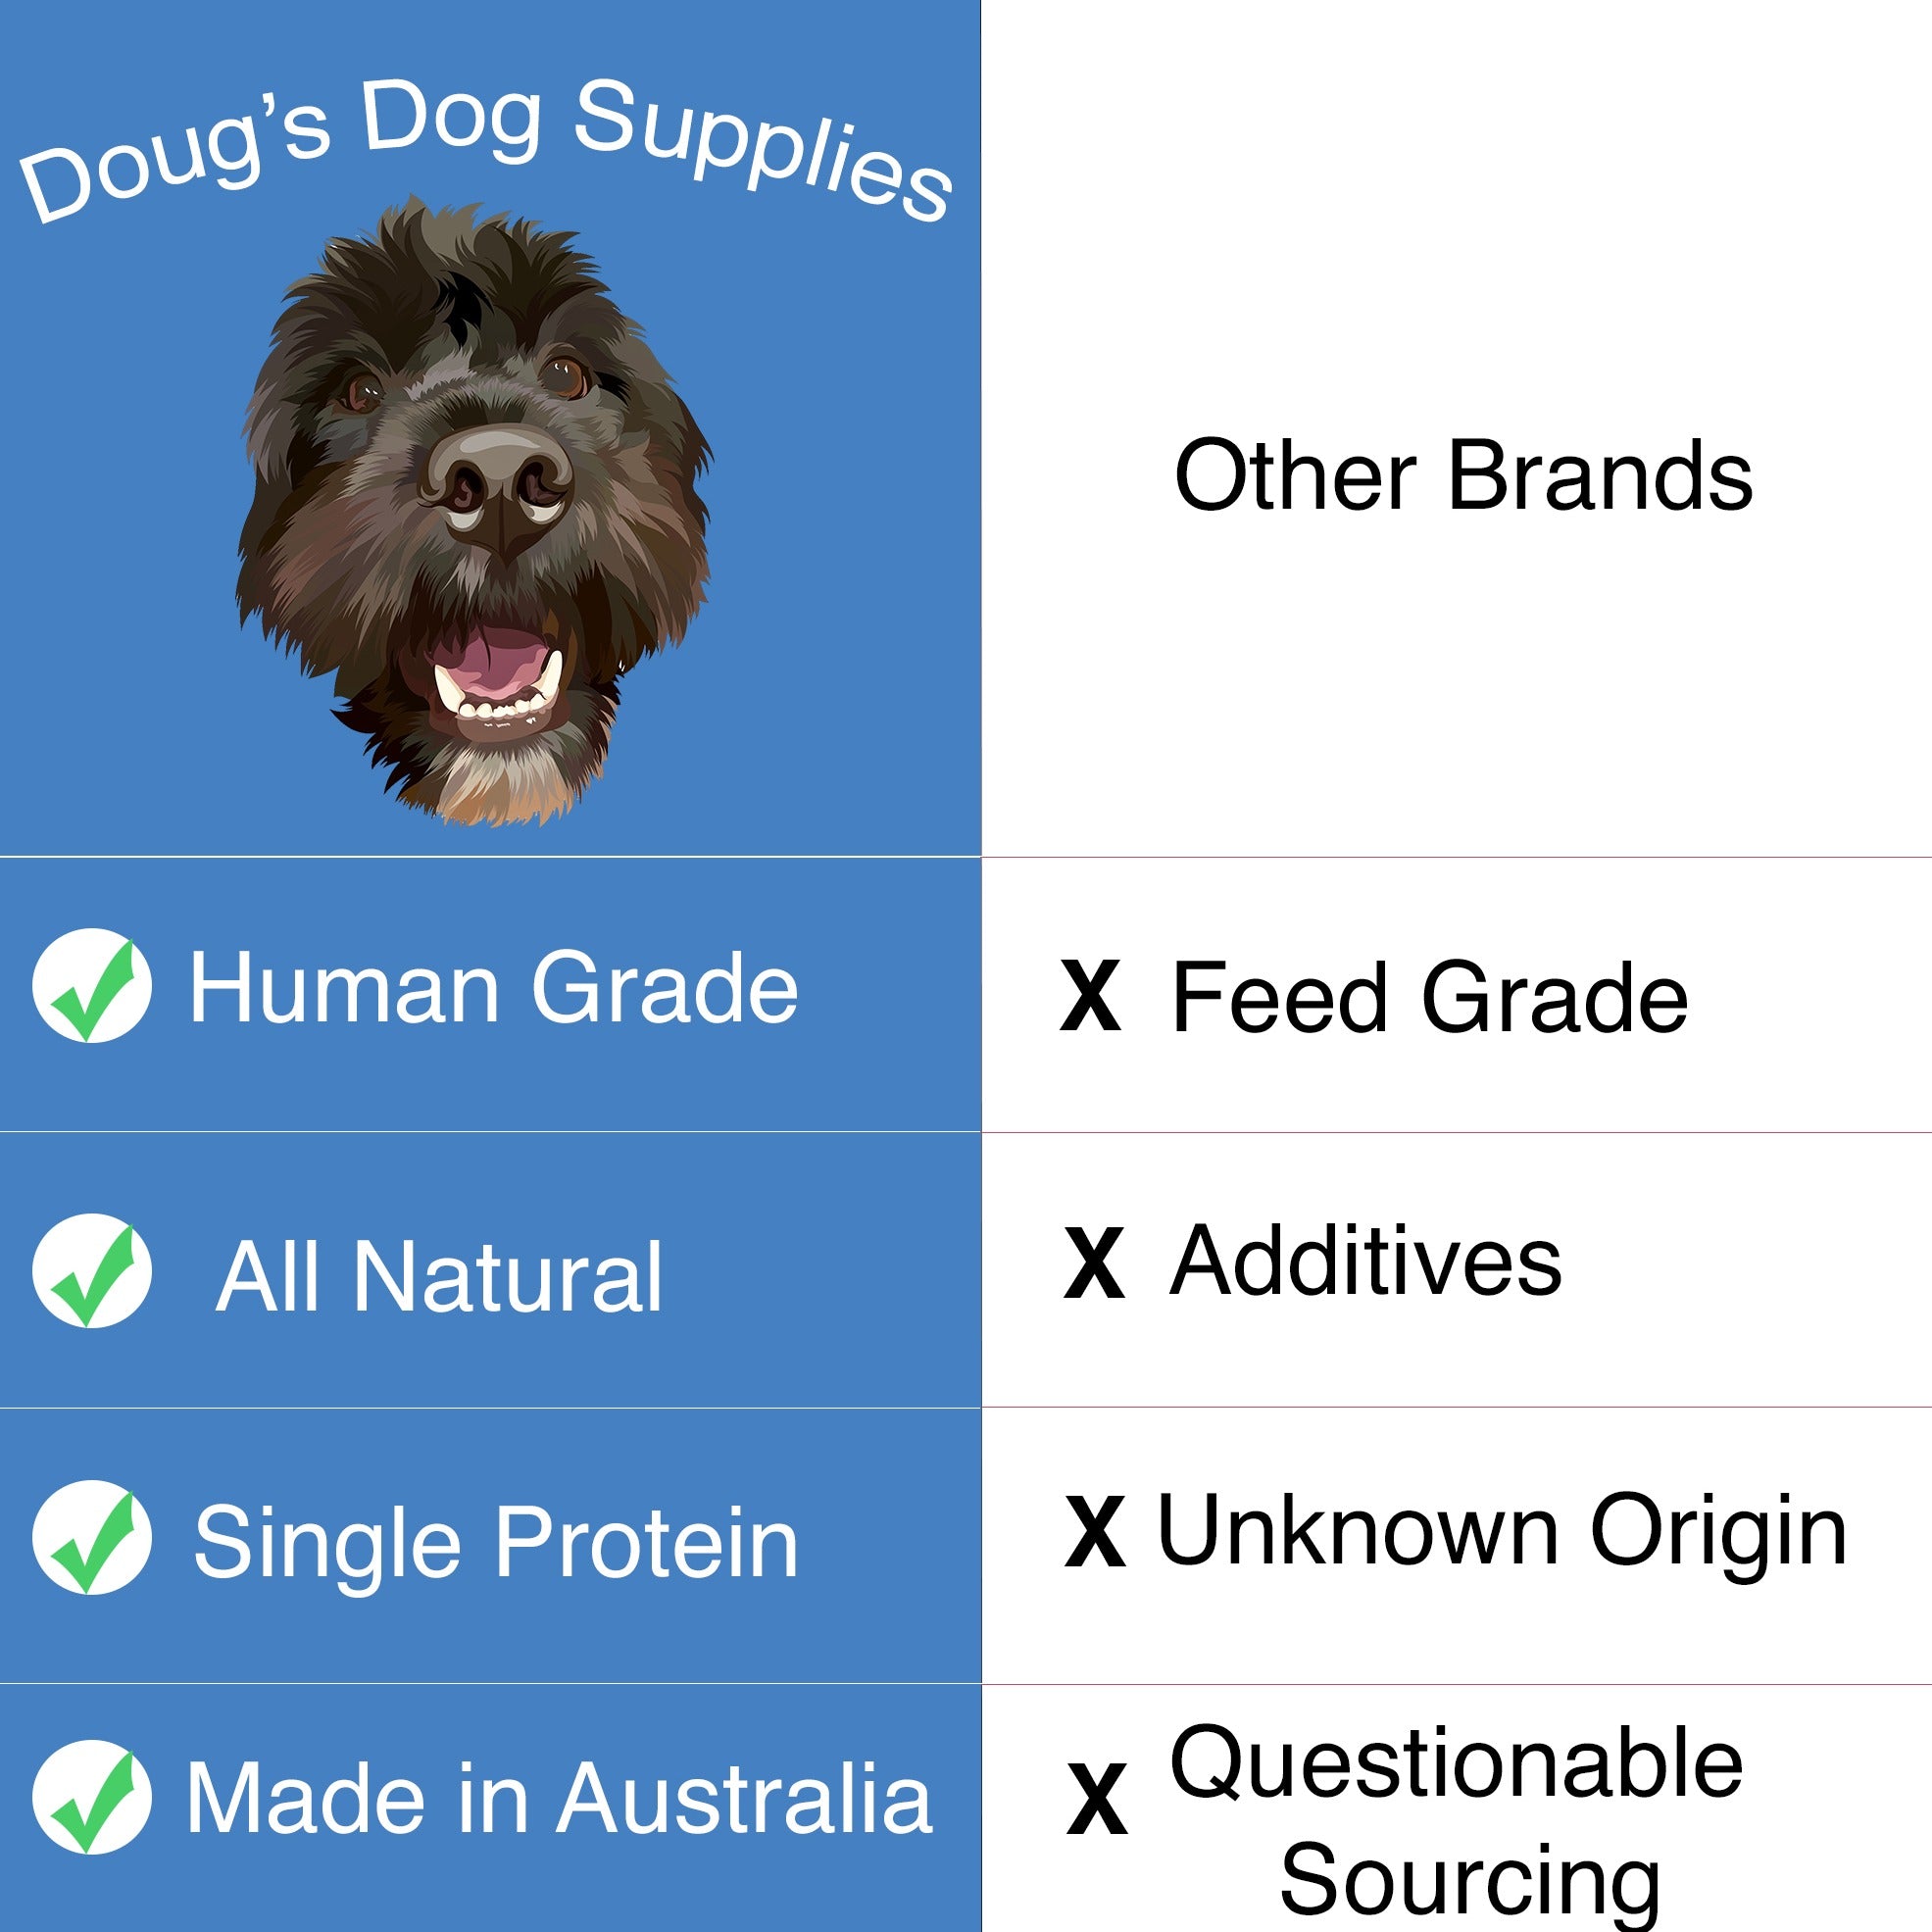 Kangaroo Jerky Dog Treats Doug's Dog Supplies